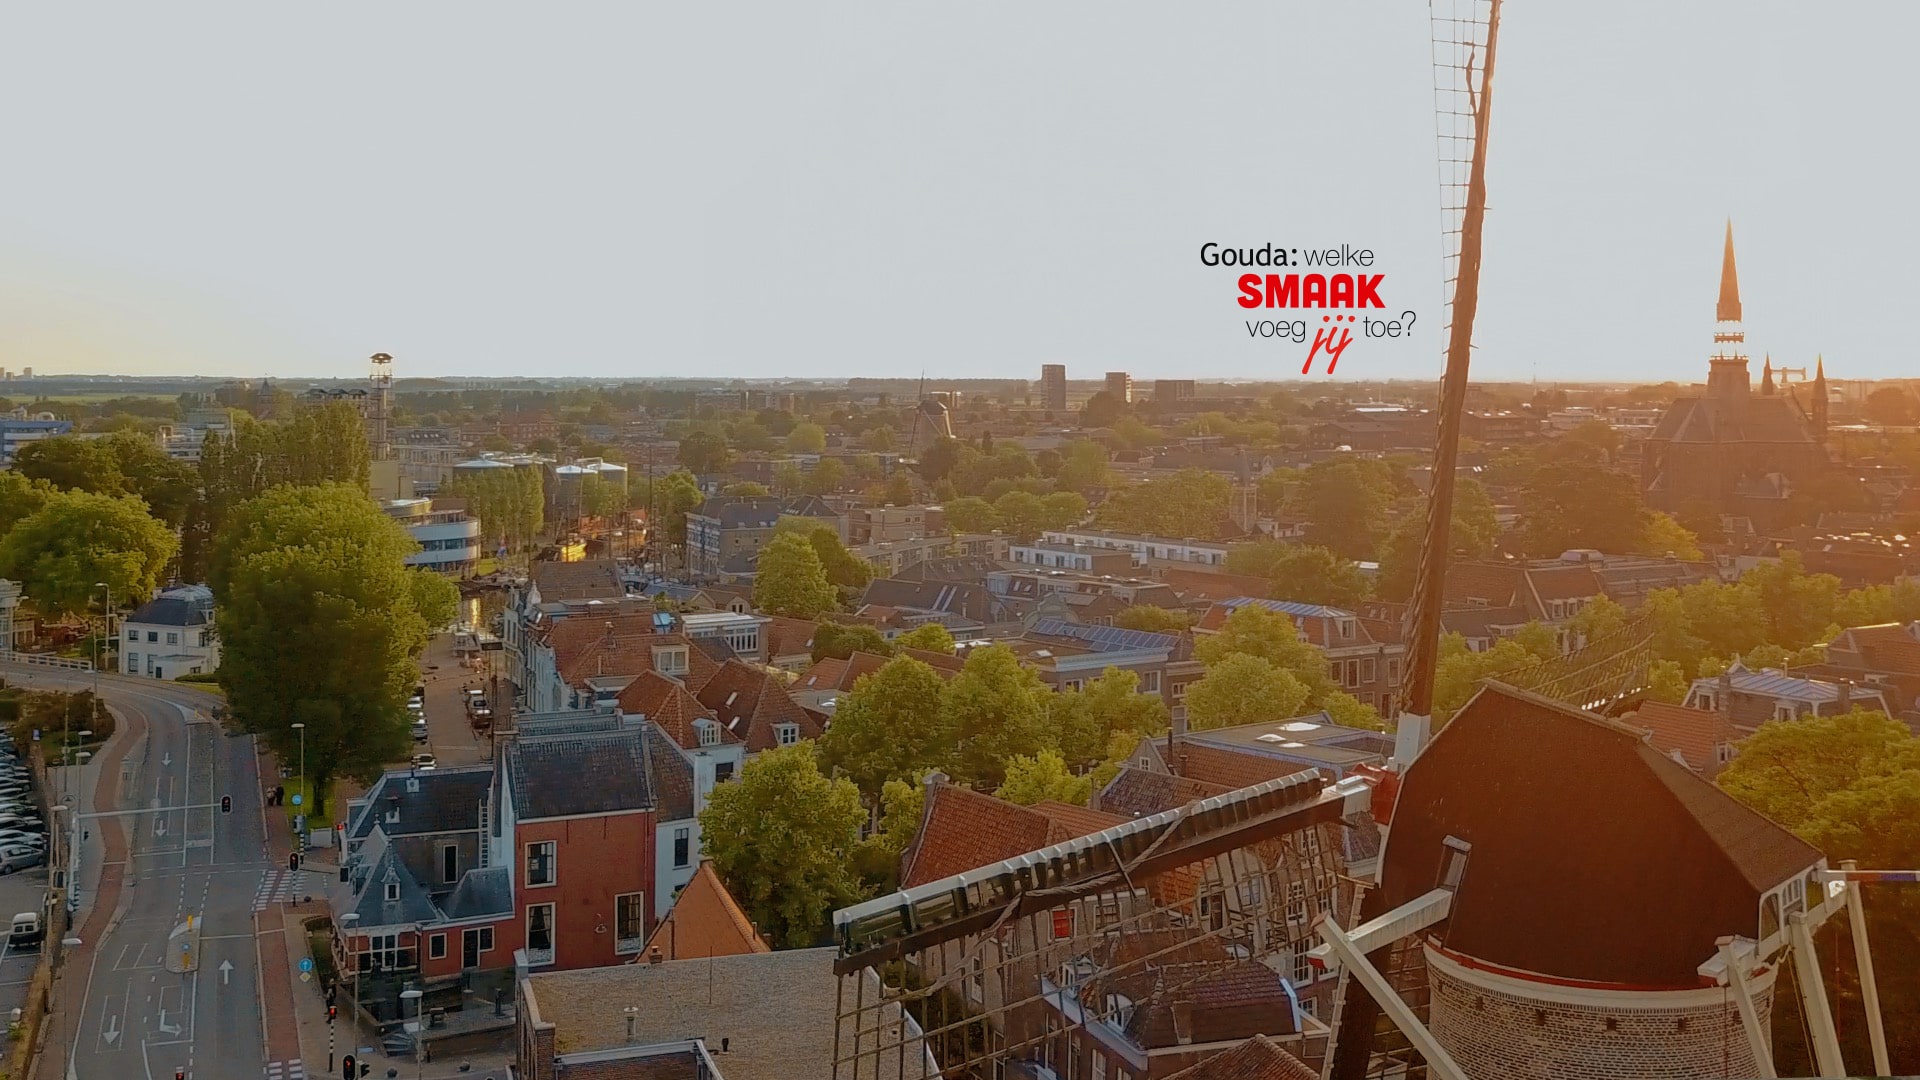 Luchtfoto van Gouda met op de voorgrond een molen. Rechts van het midden het logo Gouda: welke smaak voeg jij toe?